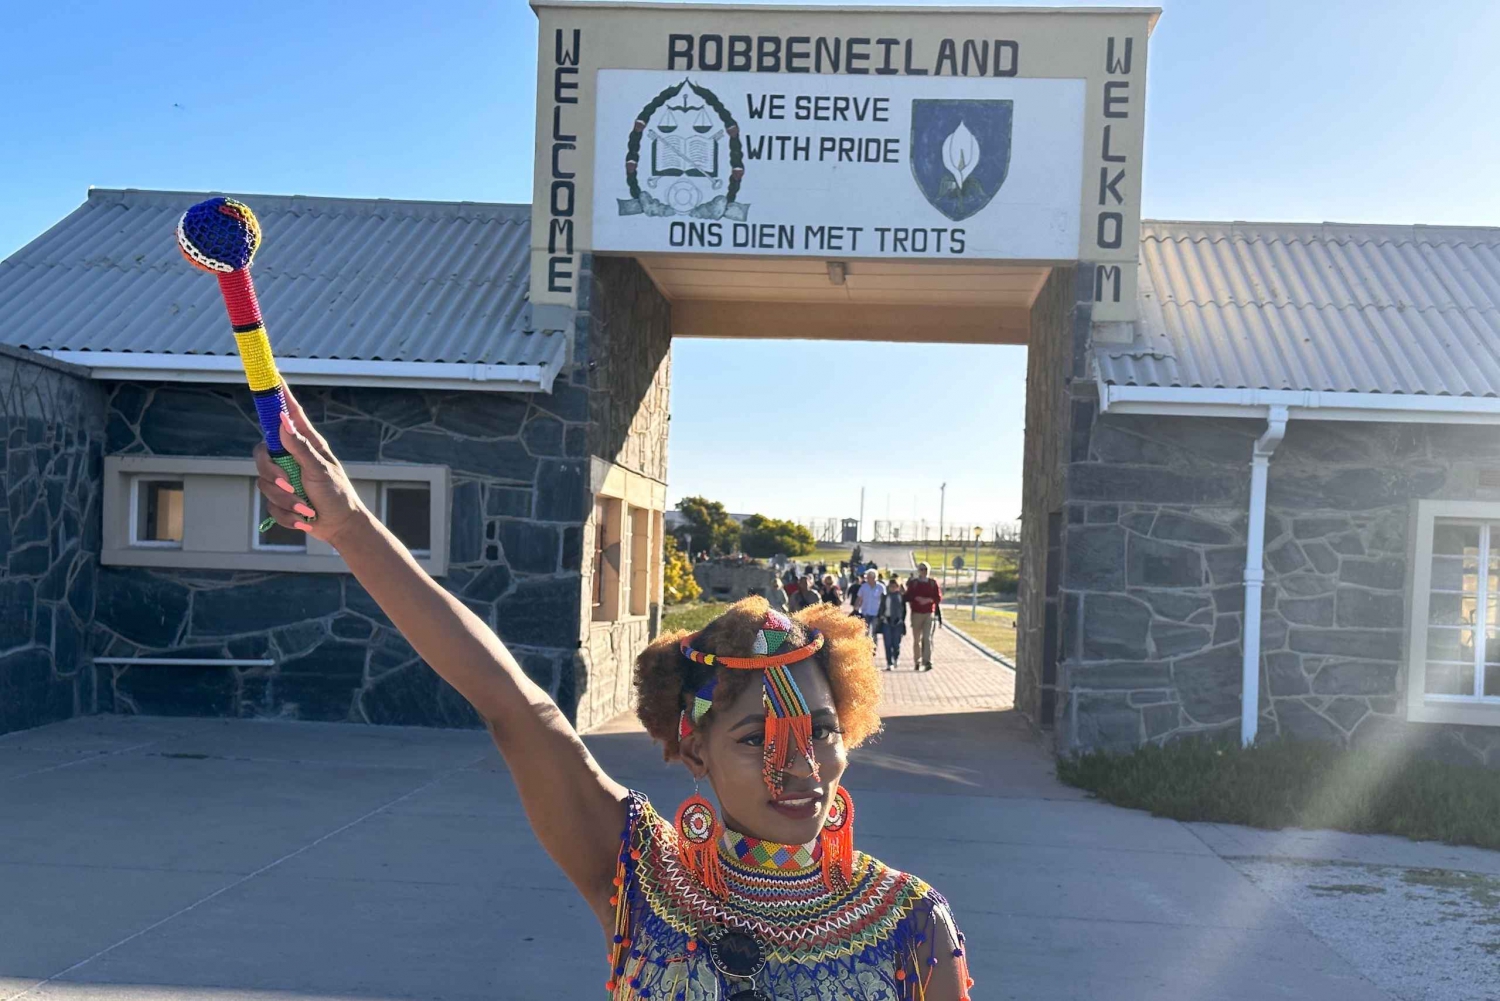 Città del Capo: Robben Island e Table Mountain con trasferimento in hotel